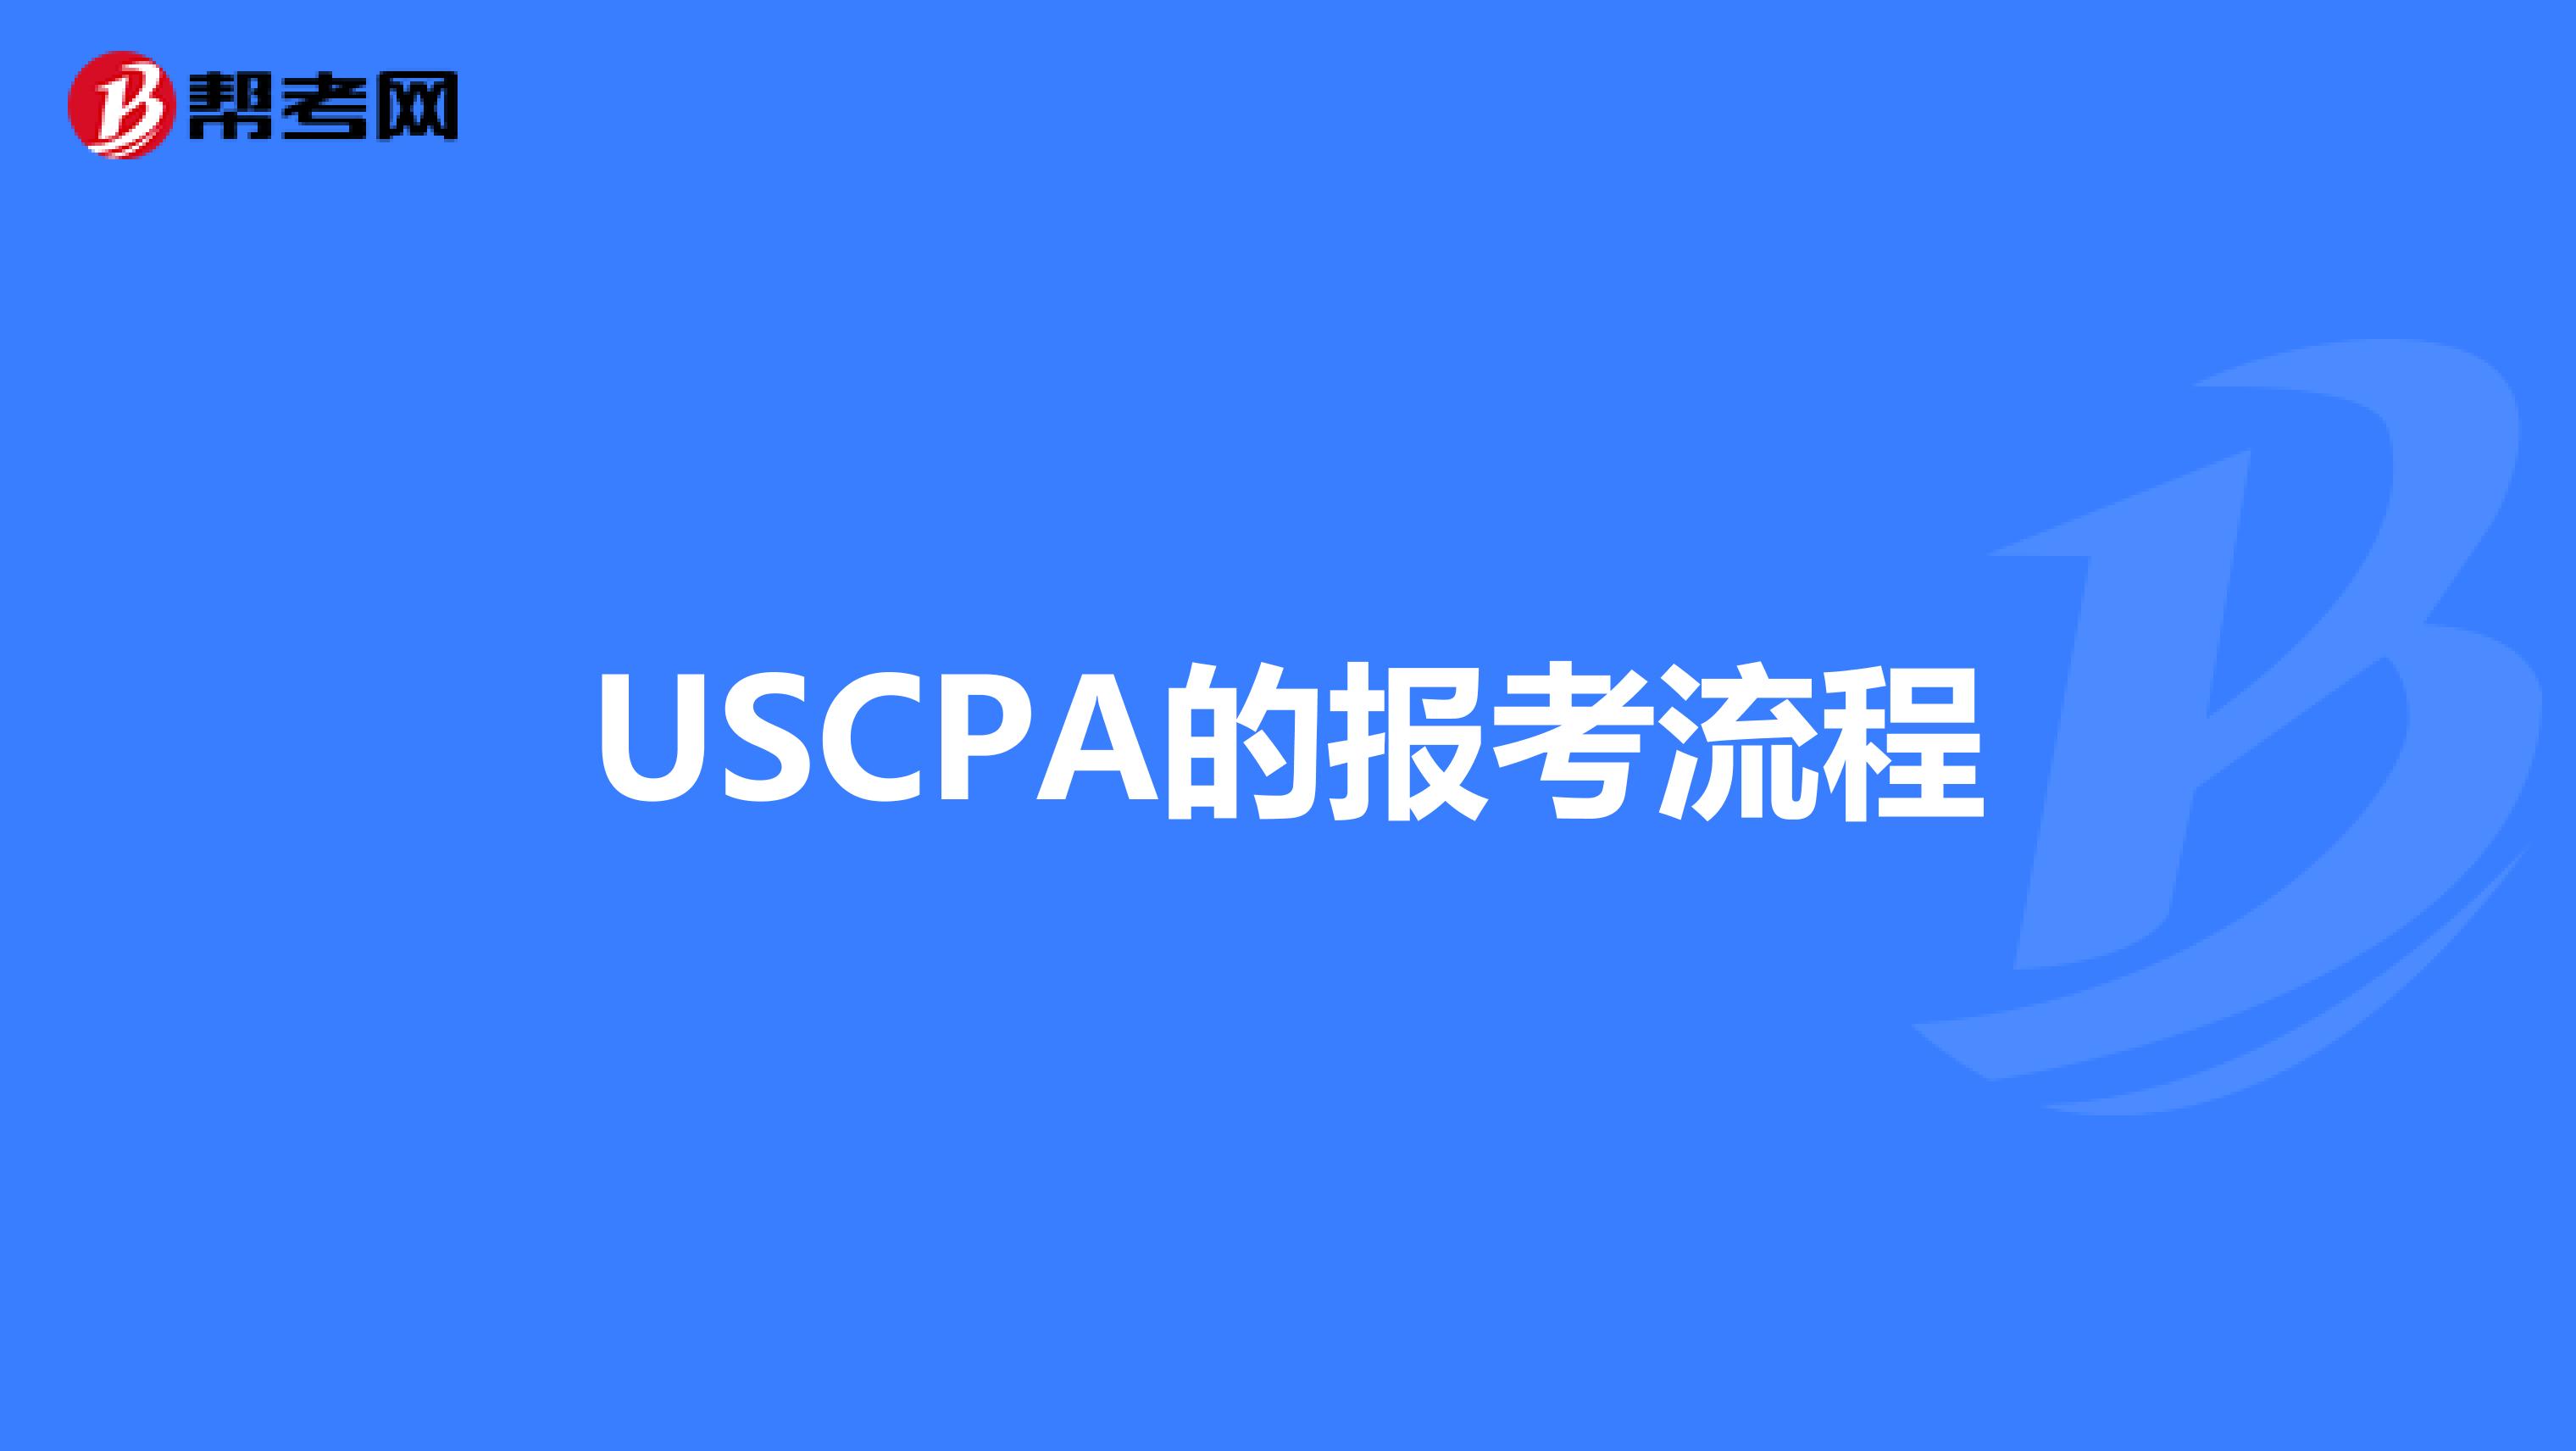 USCPA的报考流程